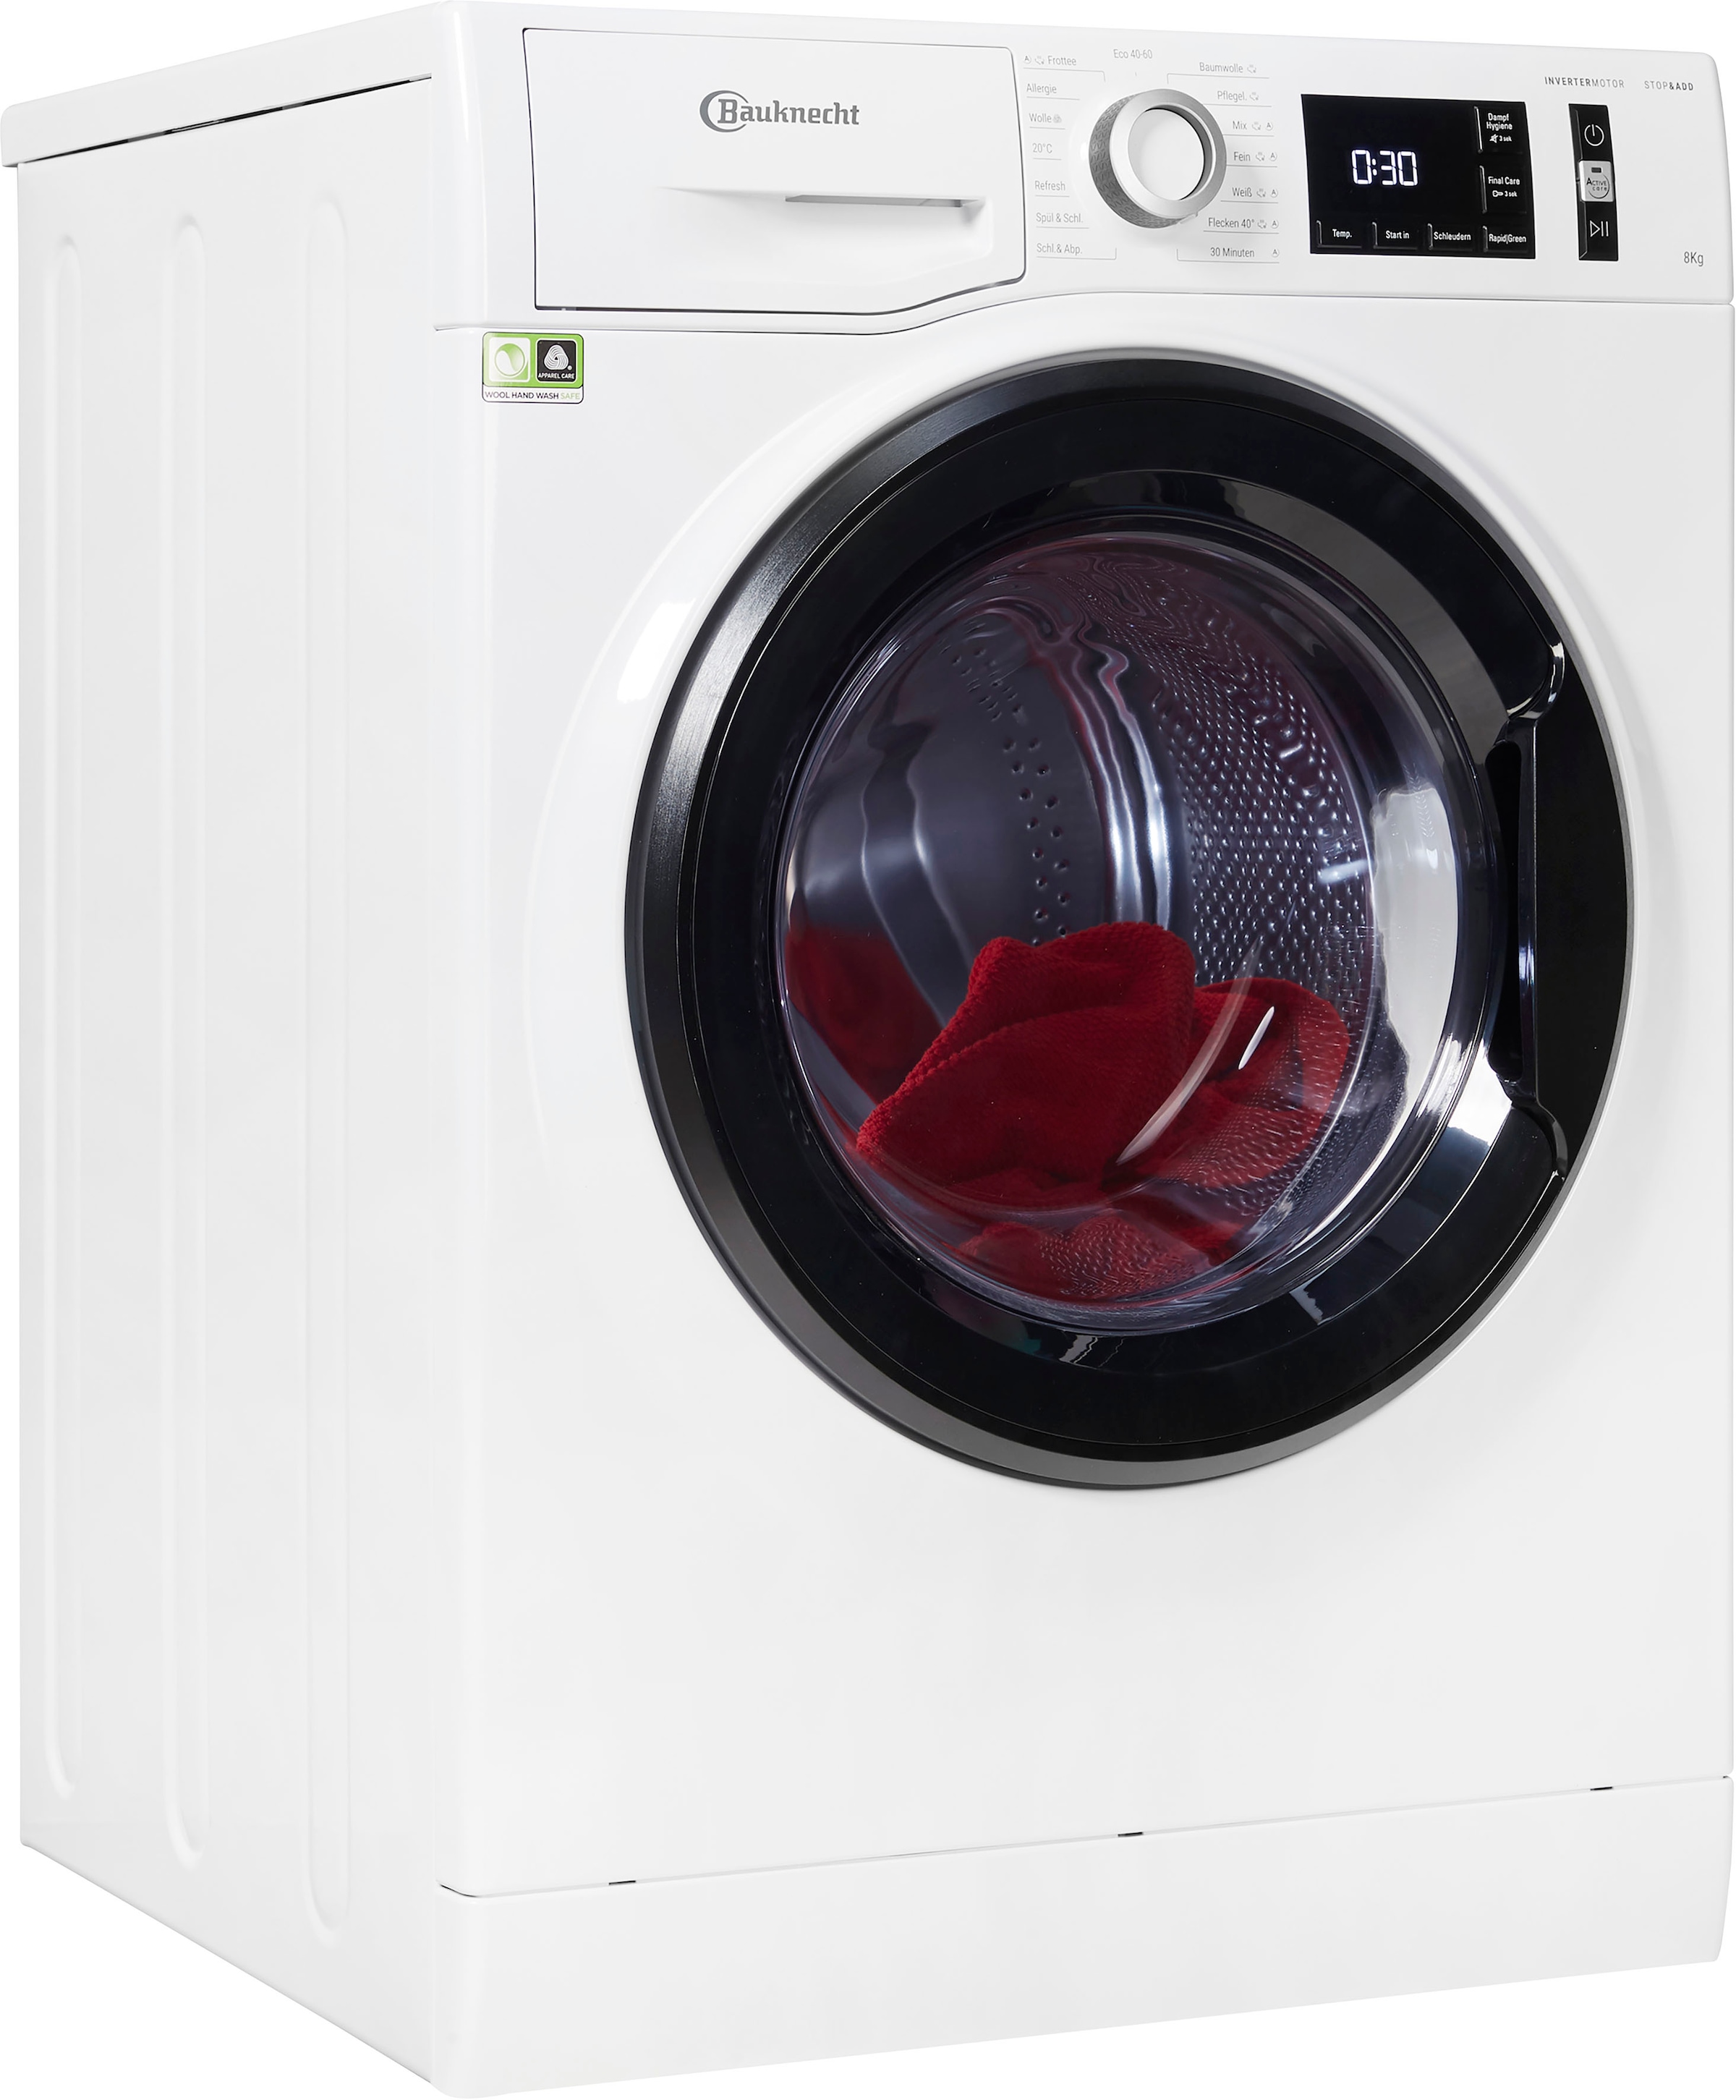 BAUKNECHT Waschmaschine Rechnung »Super 8421«, Herstellergarantie 8421, Jahre Eco auf Eco 1400 kg, Super kaufen 4 U/min, 8